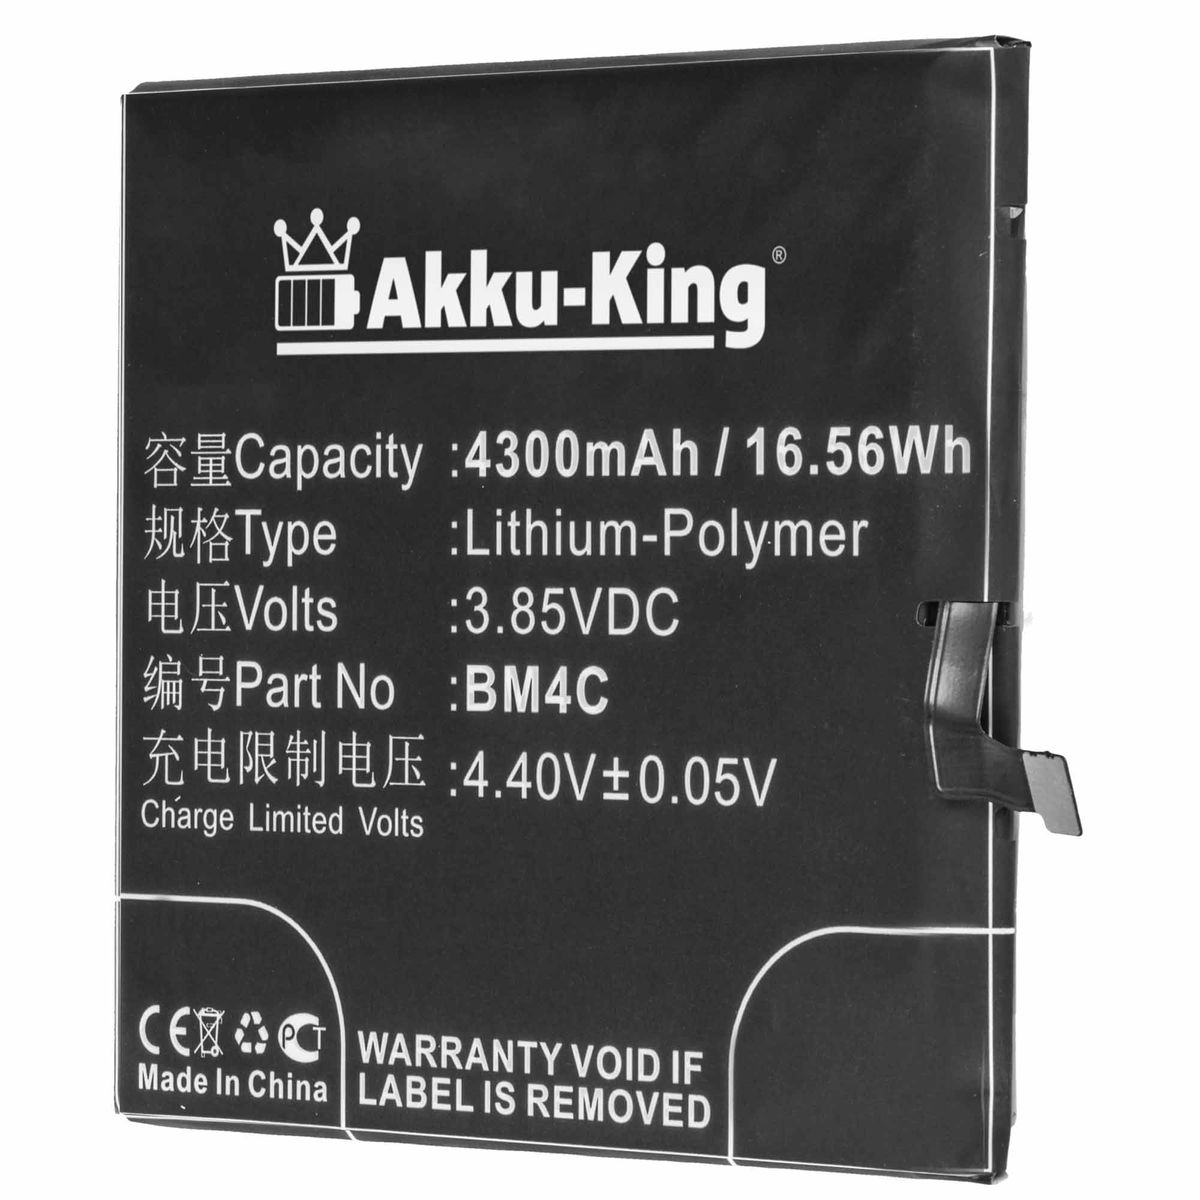 AKKU-KING Akku Xiaomi Li-Polymer BM4C kompatibel mit Handy-Akku, 3.85 Volt, 4300mAh